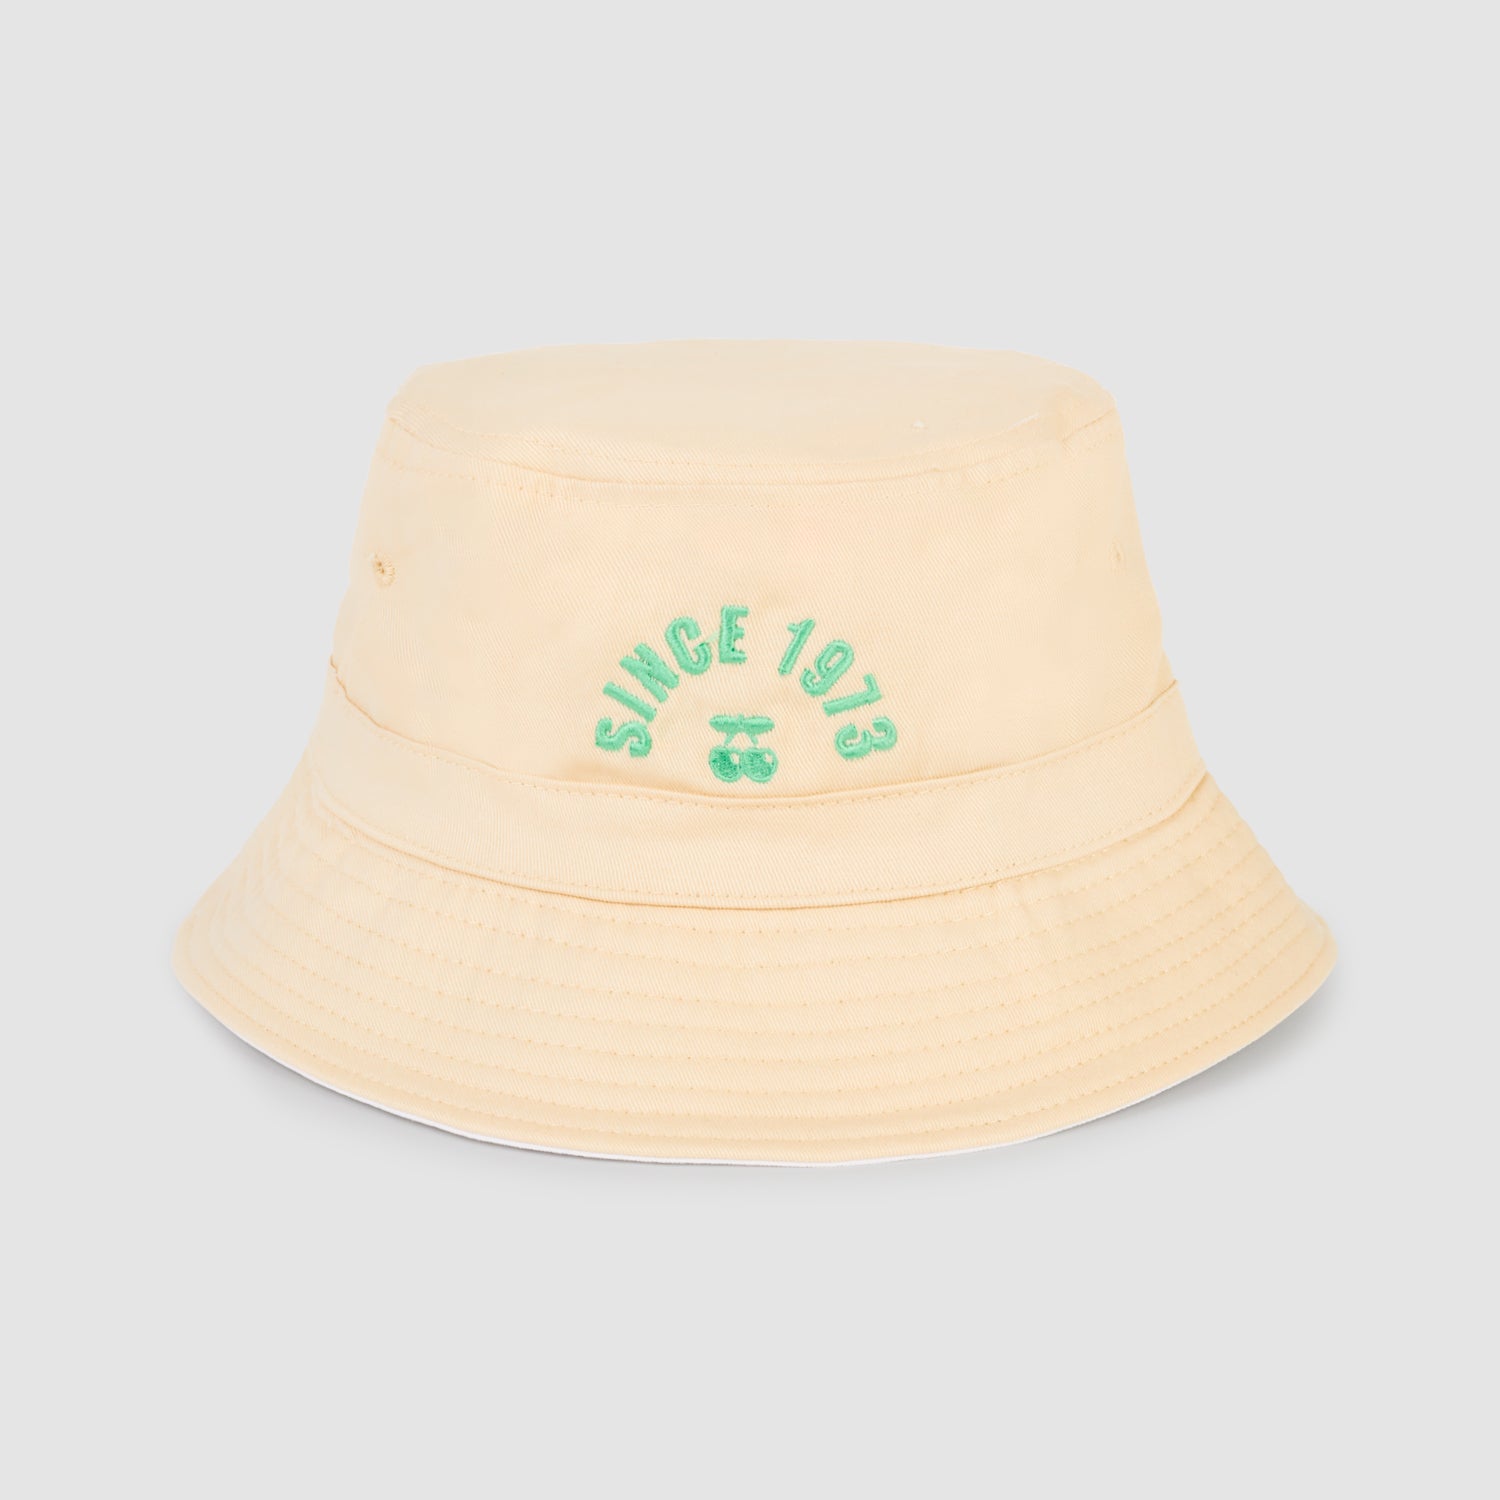 Sombrero de Pescador